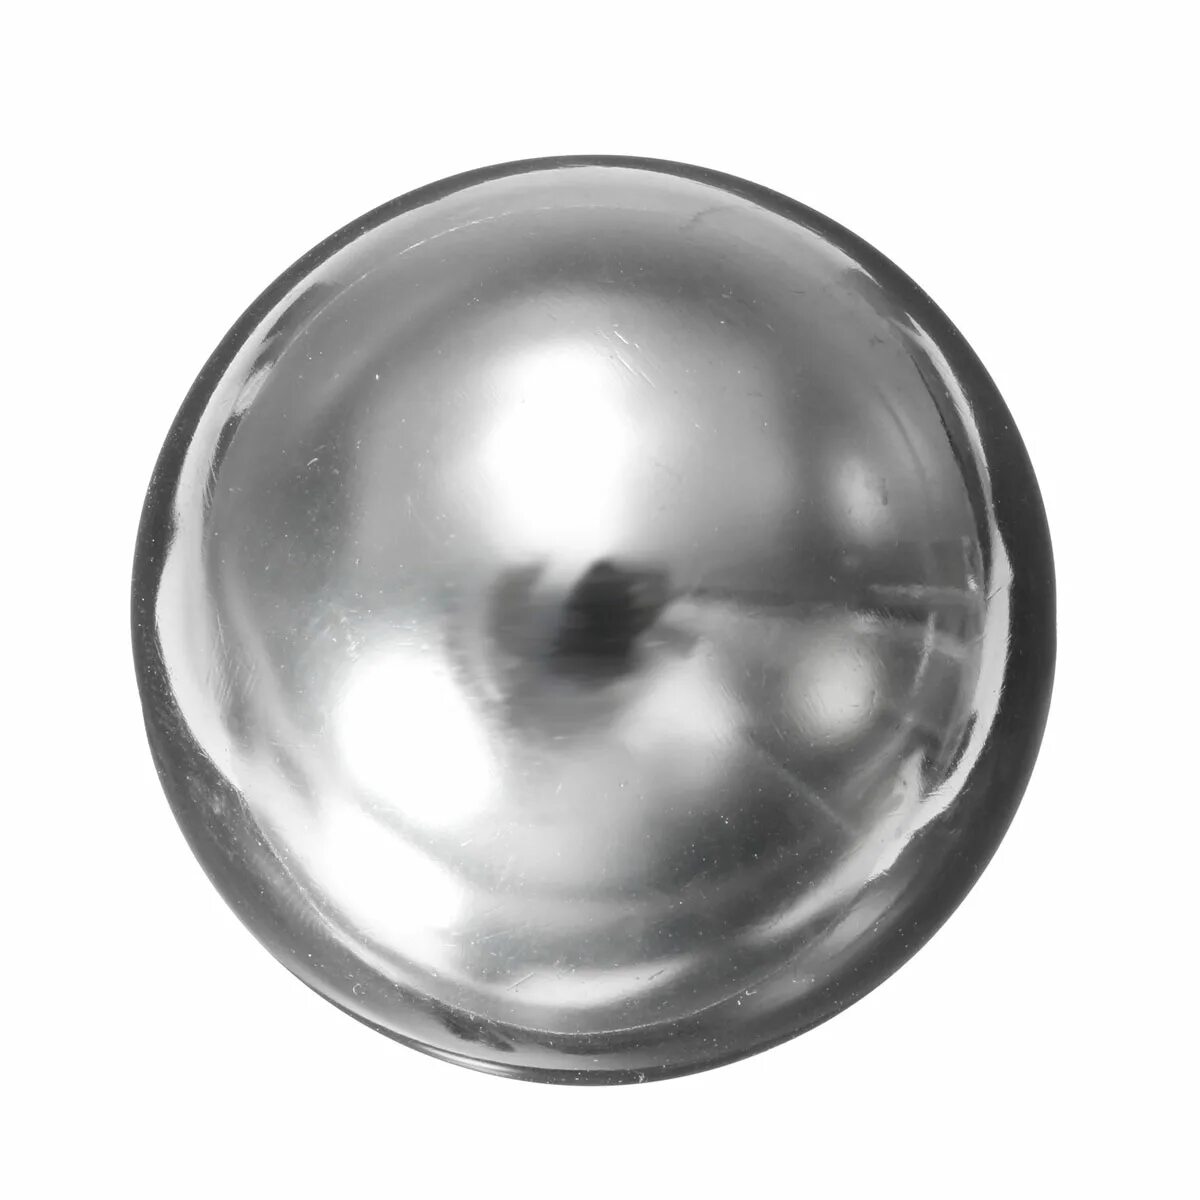 2 железных шара. Металлический шар. Хромированный металлический шар. Металлическая сфера. Стальной шарик.